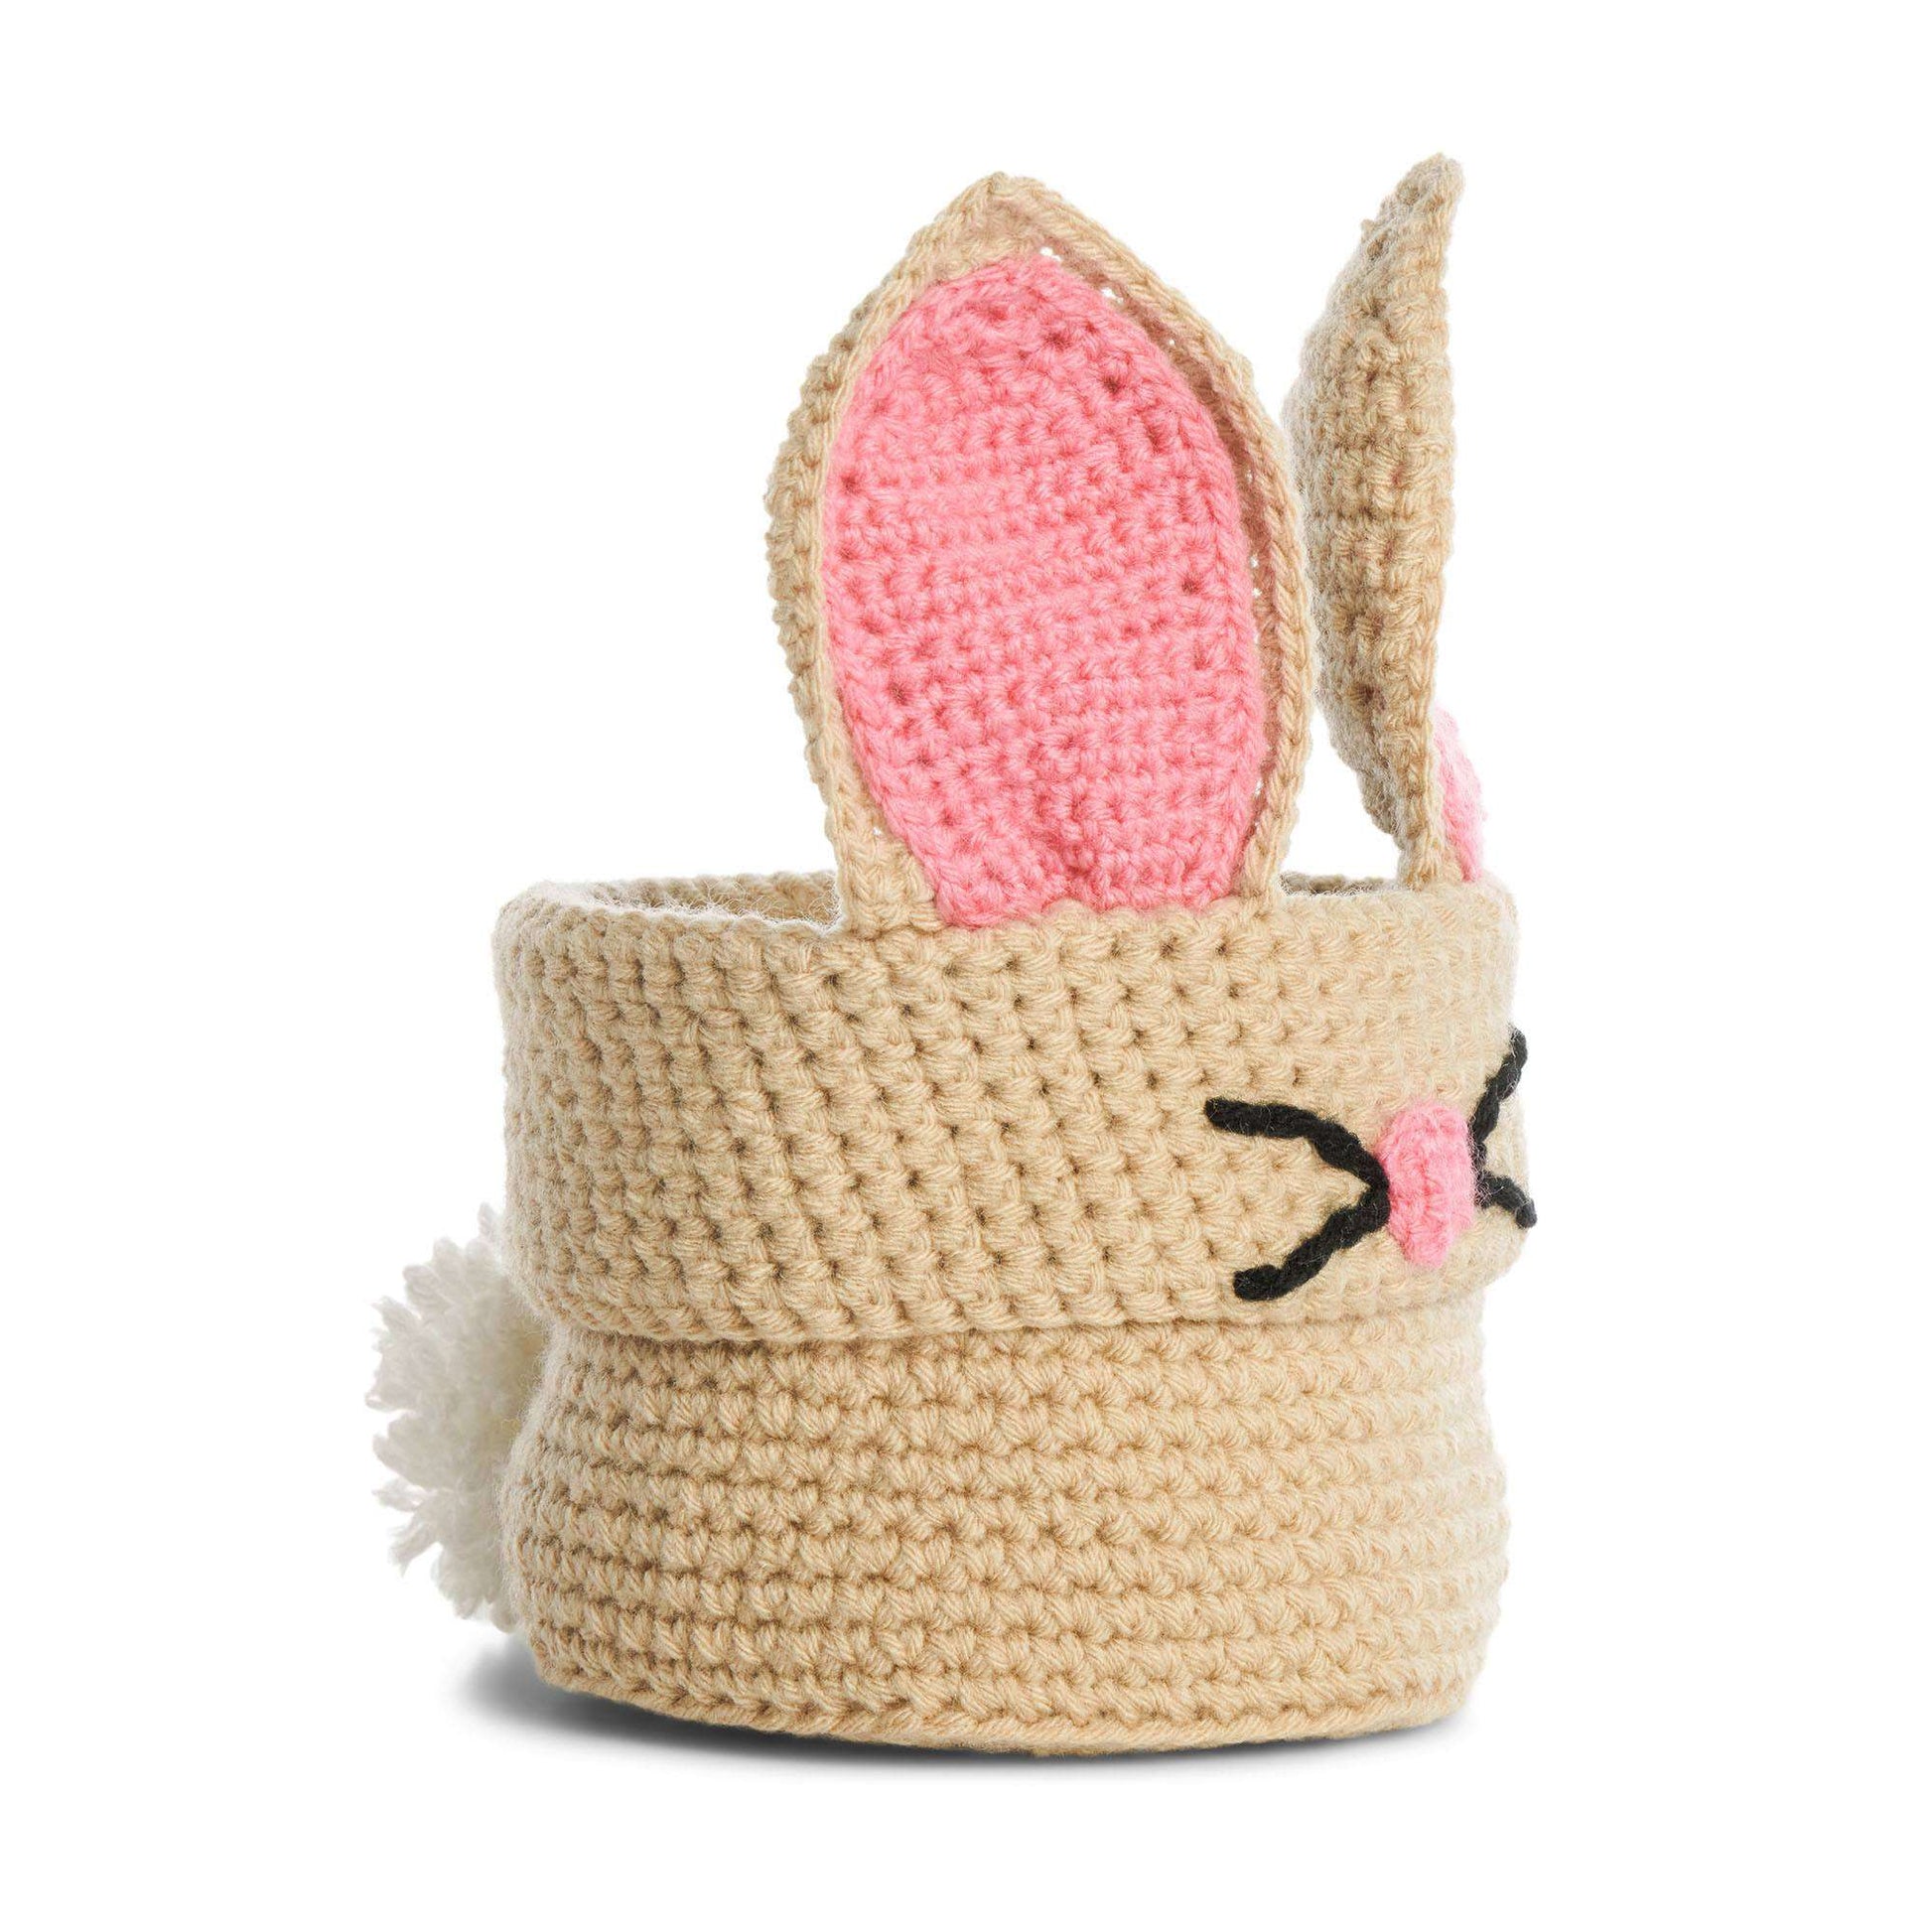 Free Red Heart Crochet Bunny Basket Pattern